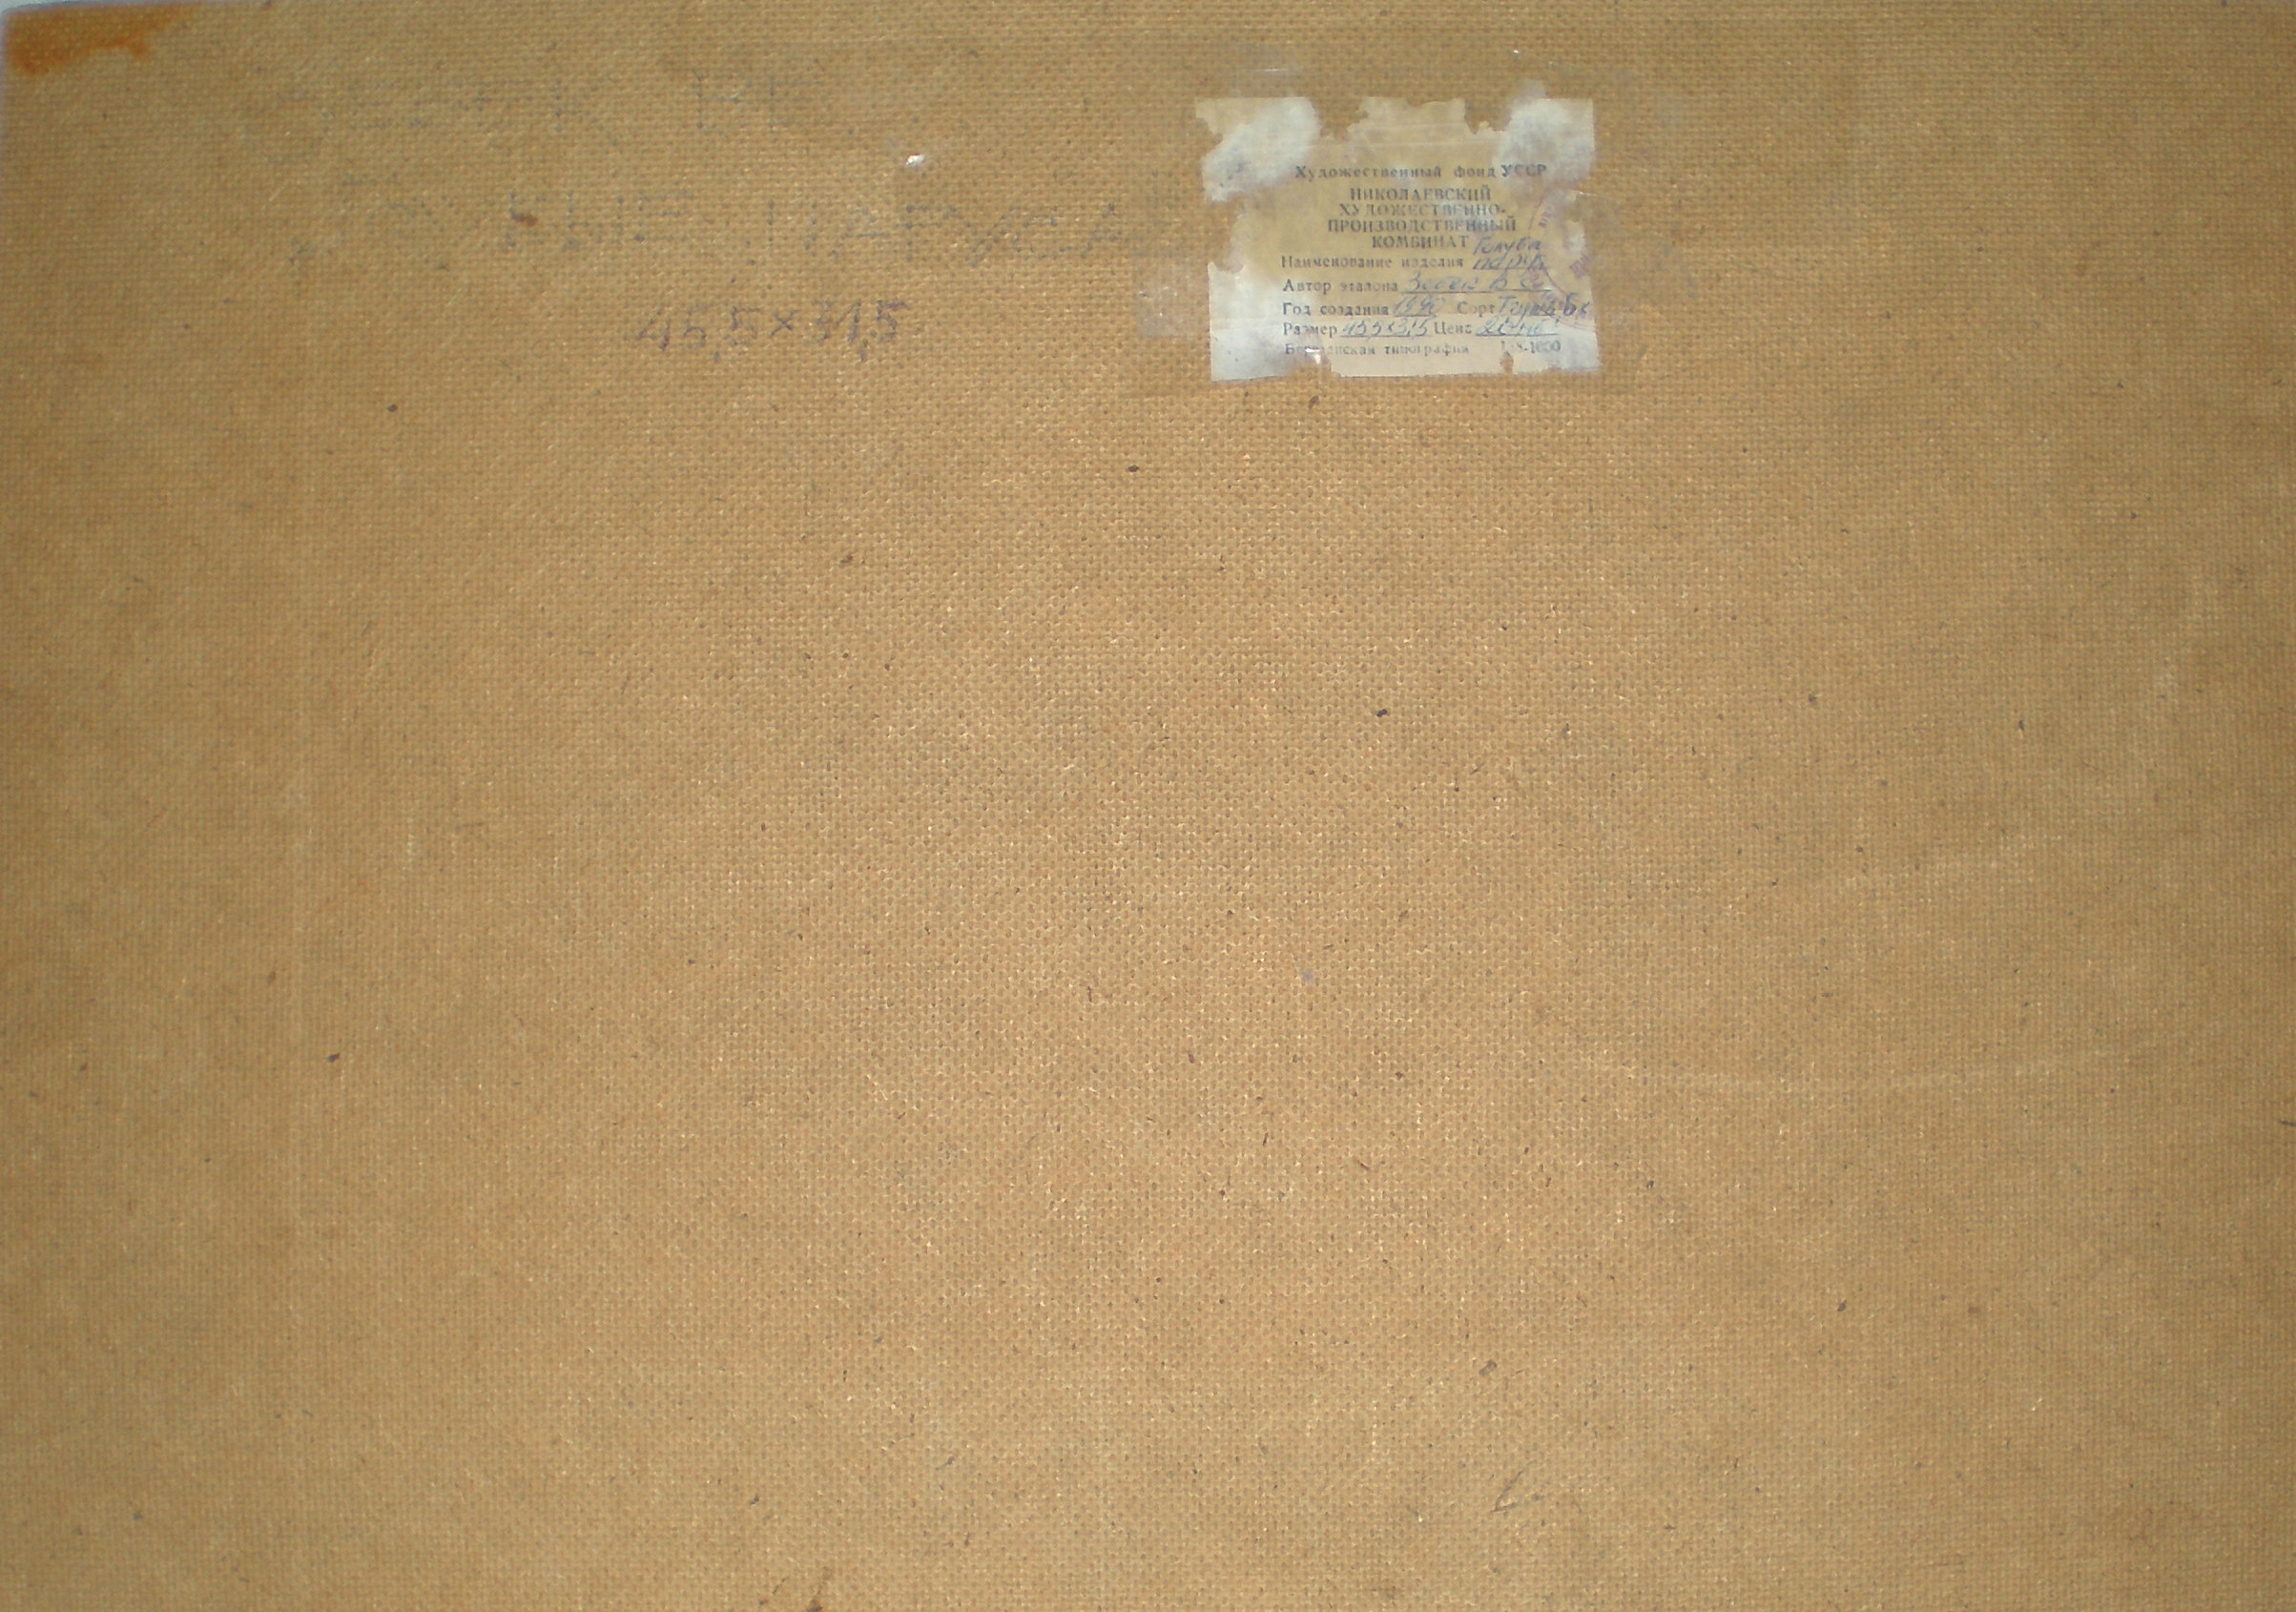 Море Зебека 45,5х31,5 картон, смешаная техника 1986-1987 года - 2